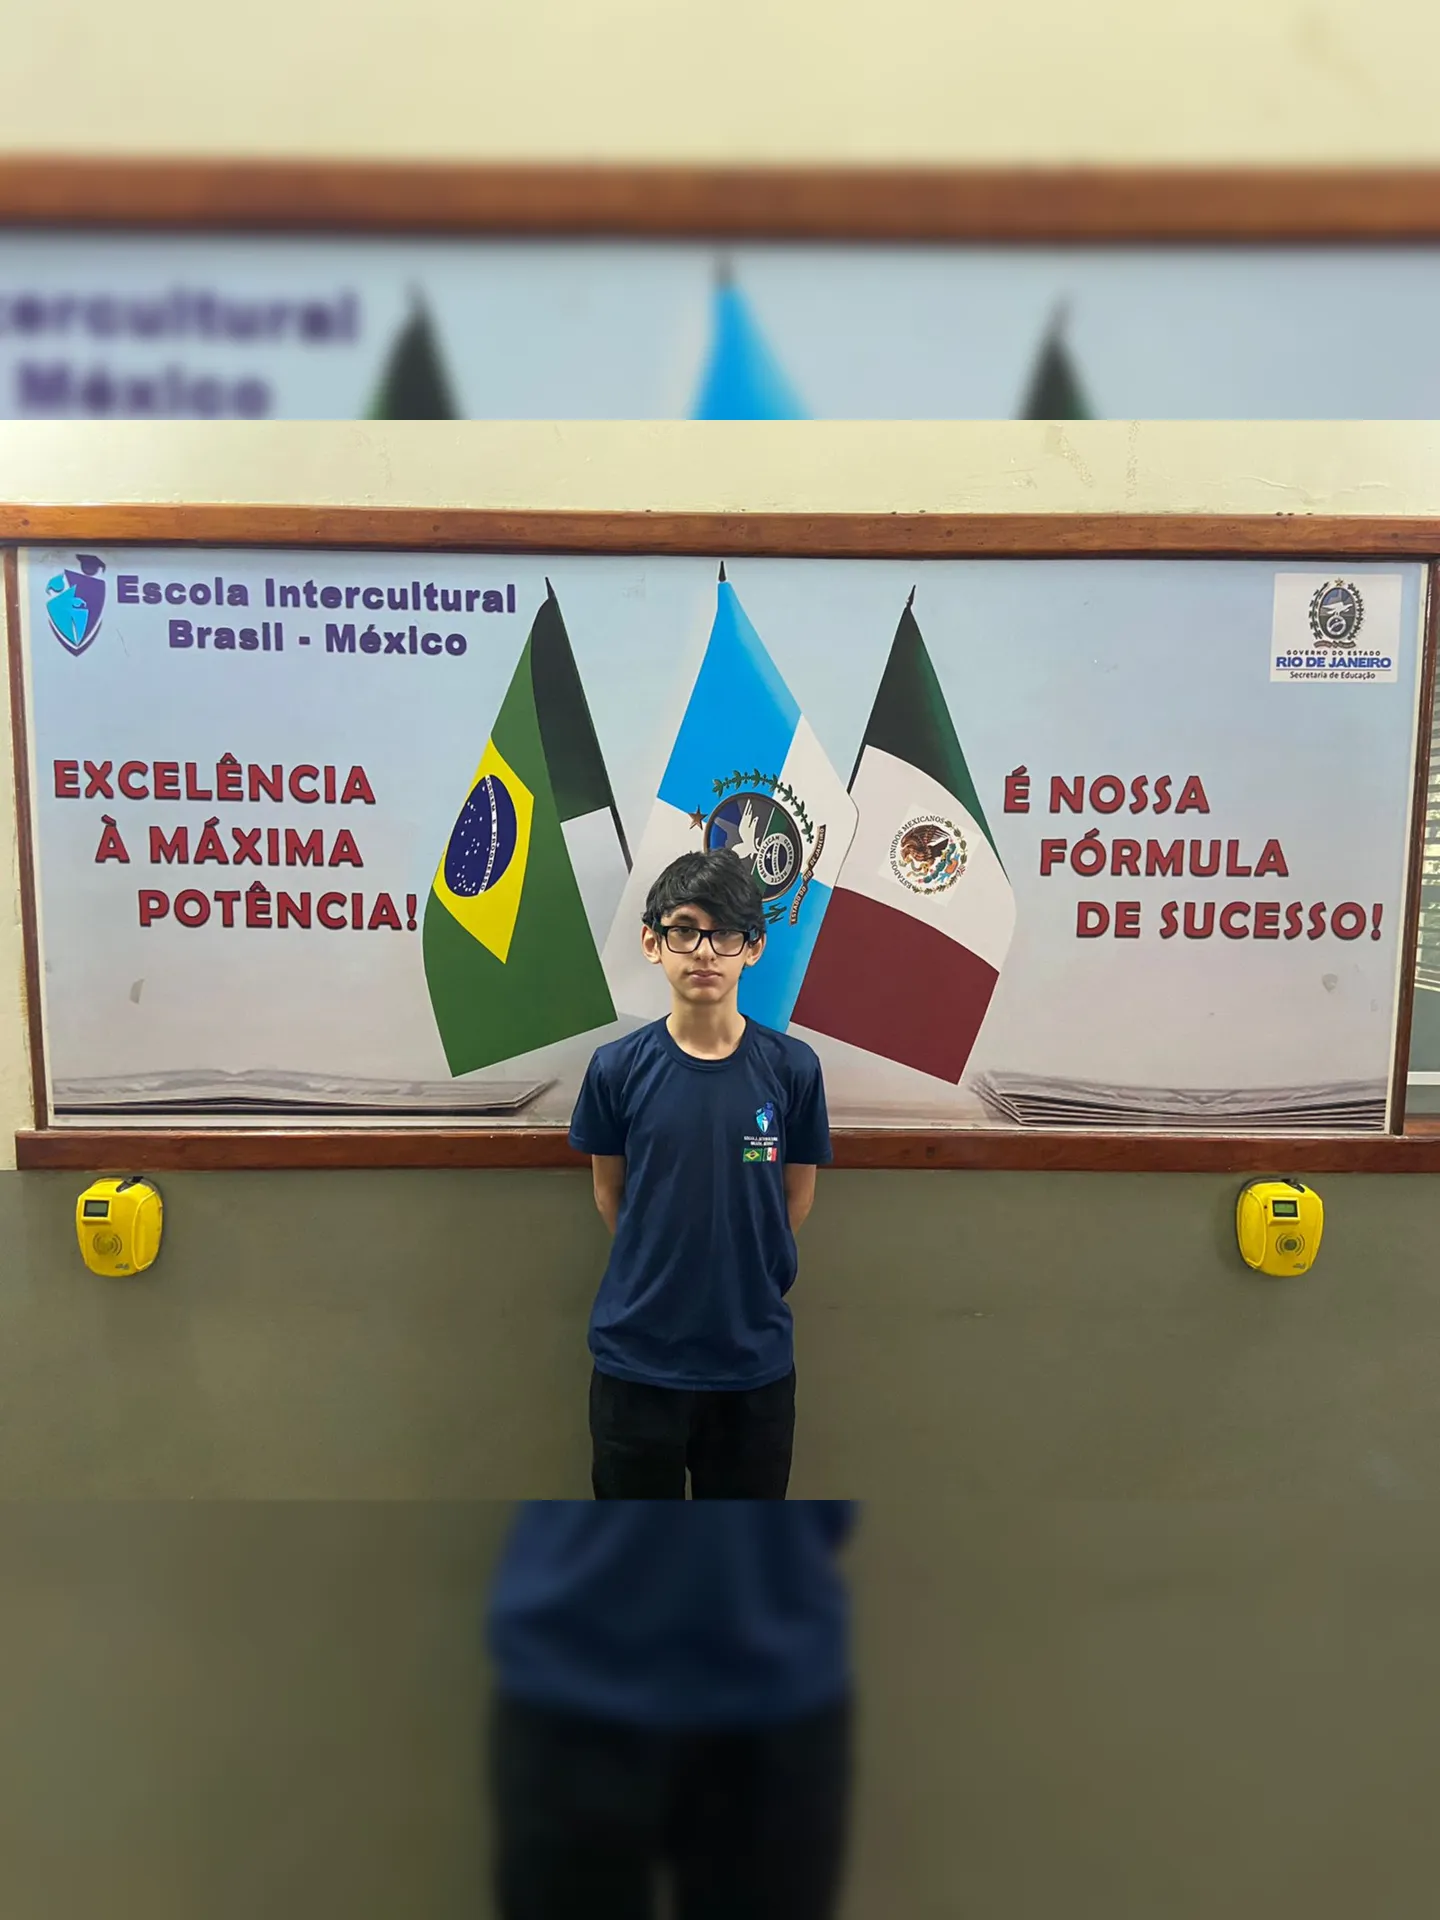 Bernardo Máximo da Costa estuda no Ciep 413 Adão Pereira Nunes – Intercultural Brasil-México